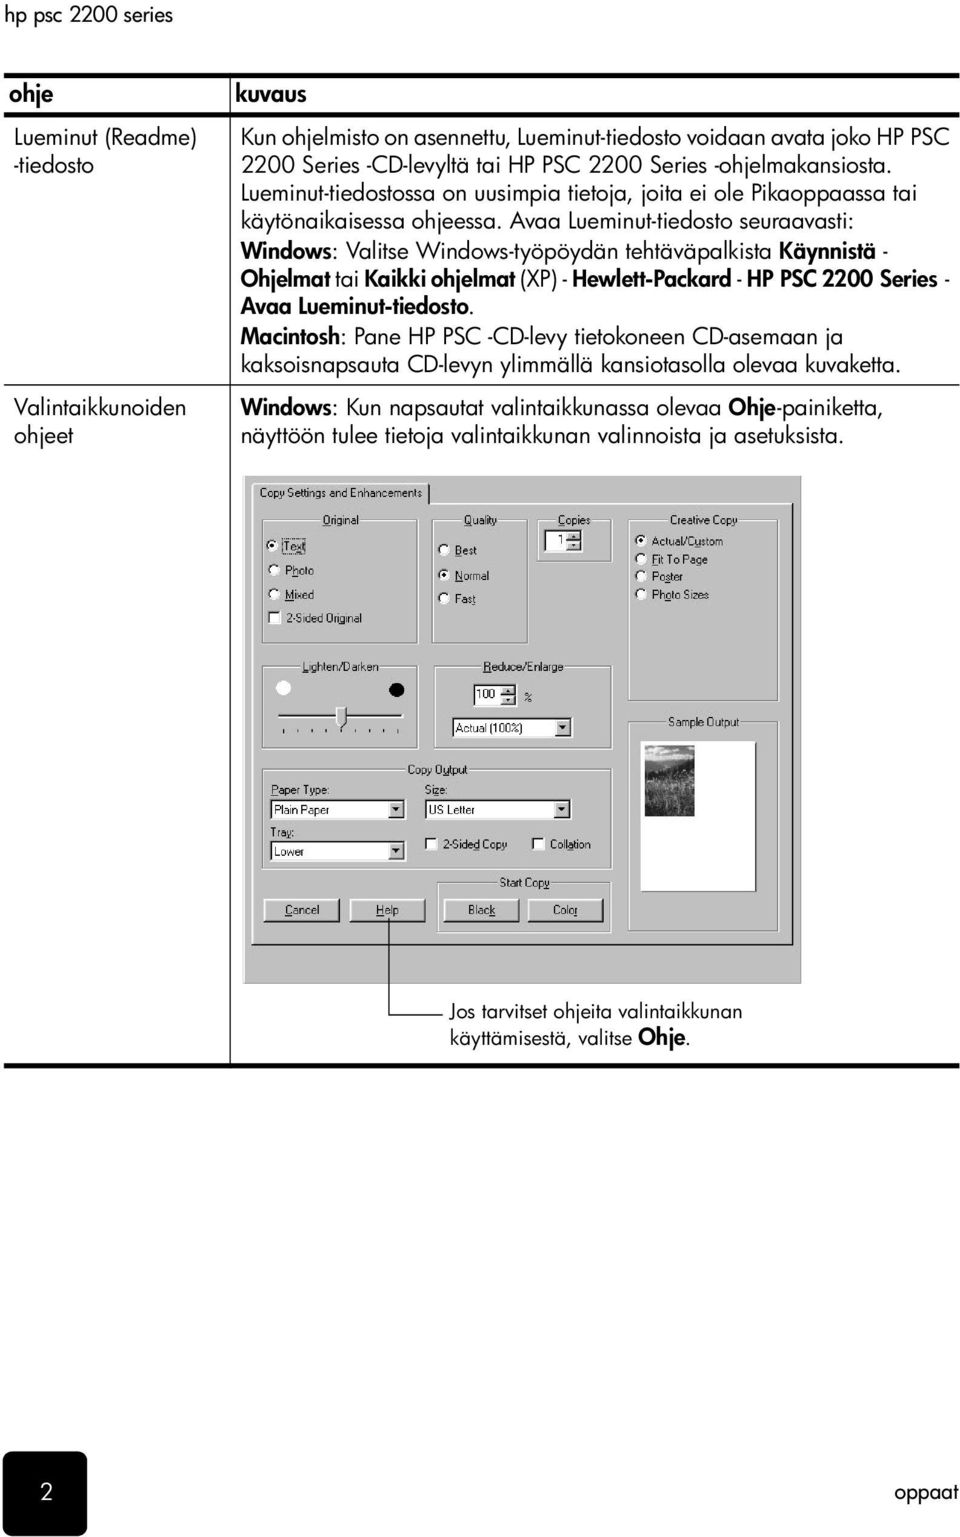 Avaa Lueminut-tiedosto seuraavasti: Windows: Valitse Windows-työpöydän tehtäväpalkista Käynnistä - Ohjelmat tai Kaikki ohjelmat (XP) - Hewlett-Packard - HP PSC 2200 Series - Avaa Lueminut-tiedosto.